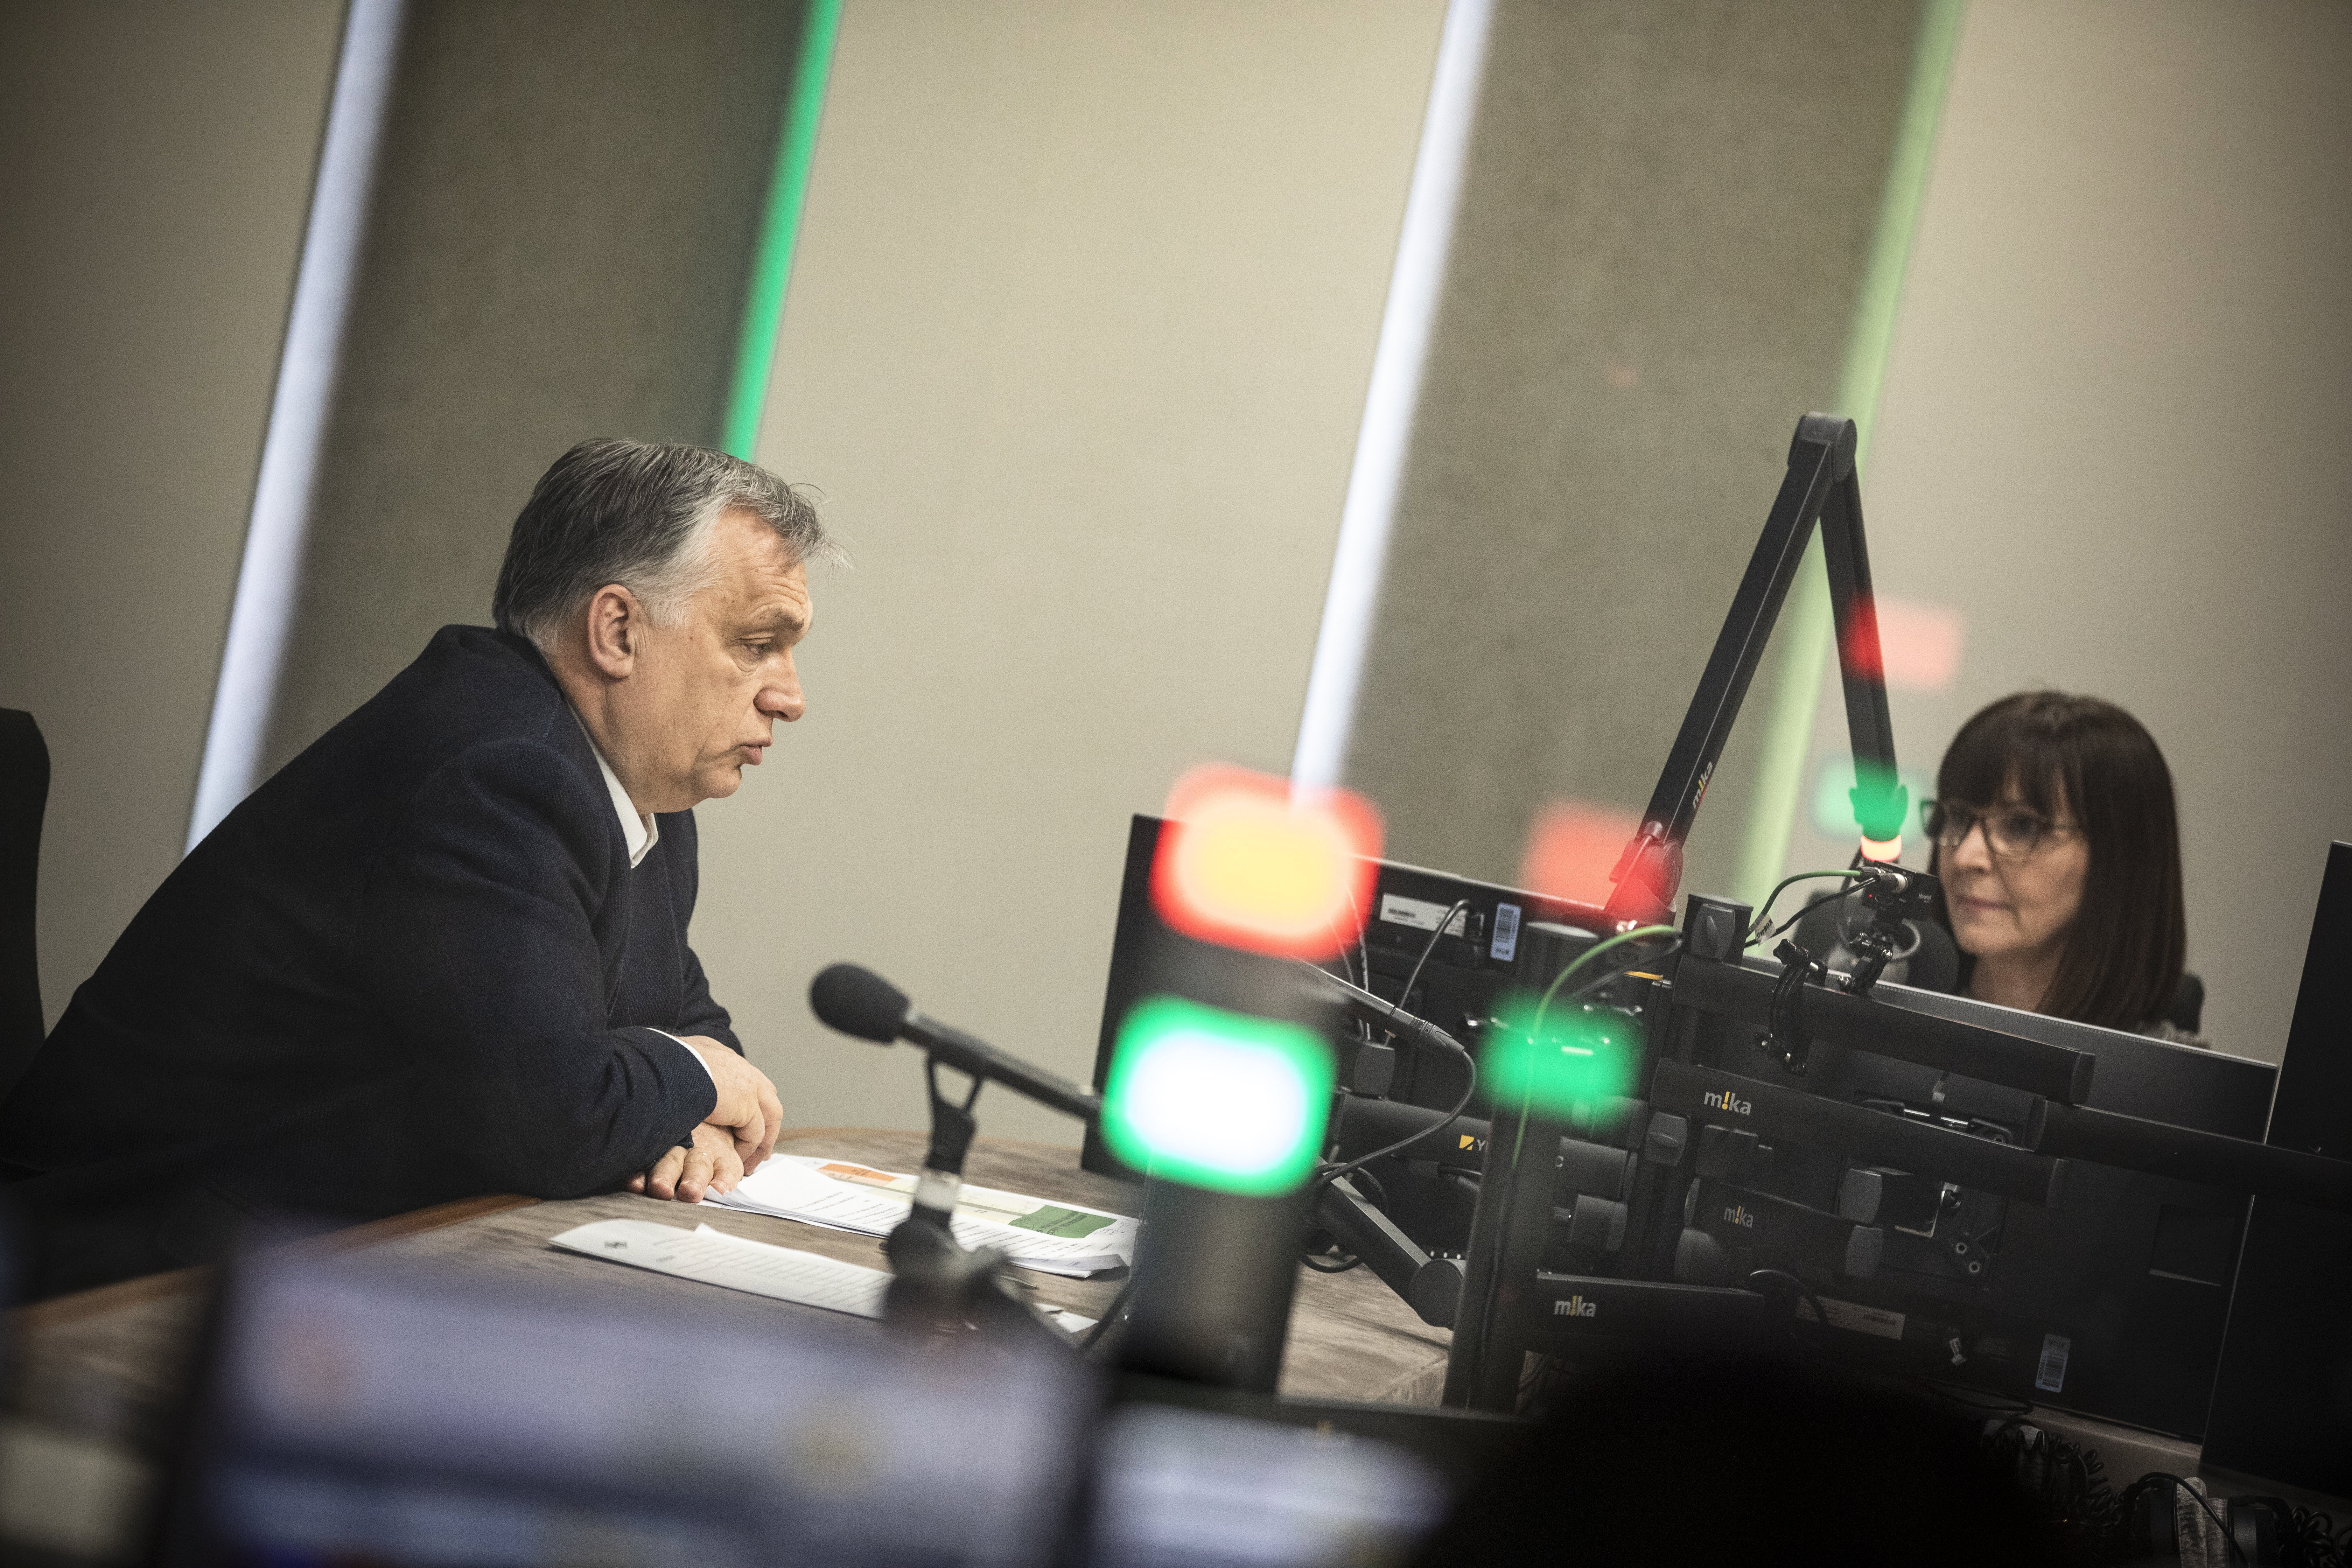 Orbánék meghátráltak az iskolai nyitás ügyében, a baloldal megint megkapta a magáét